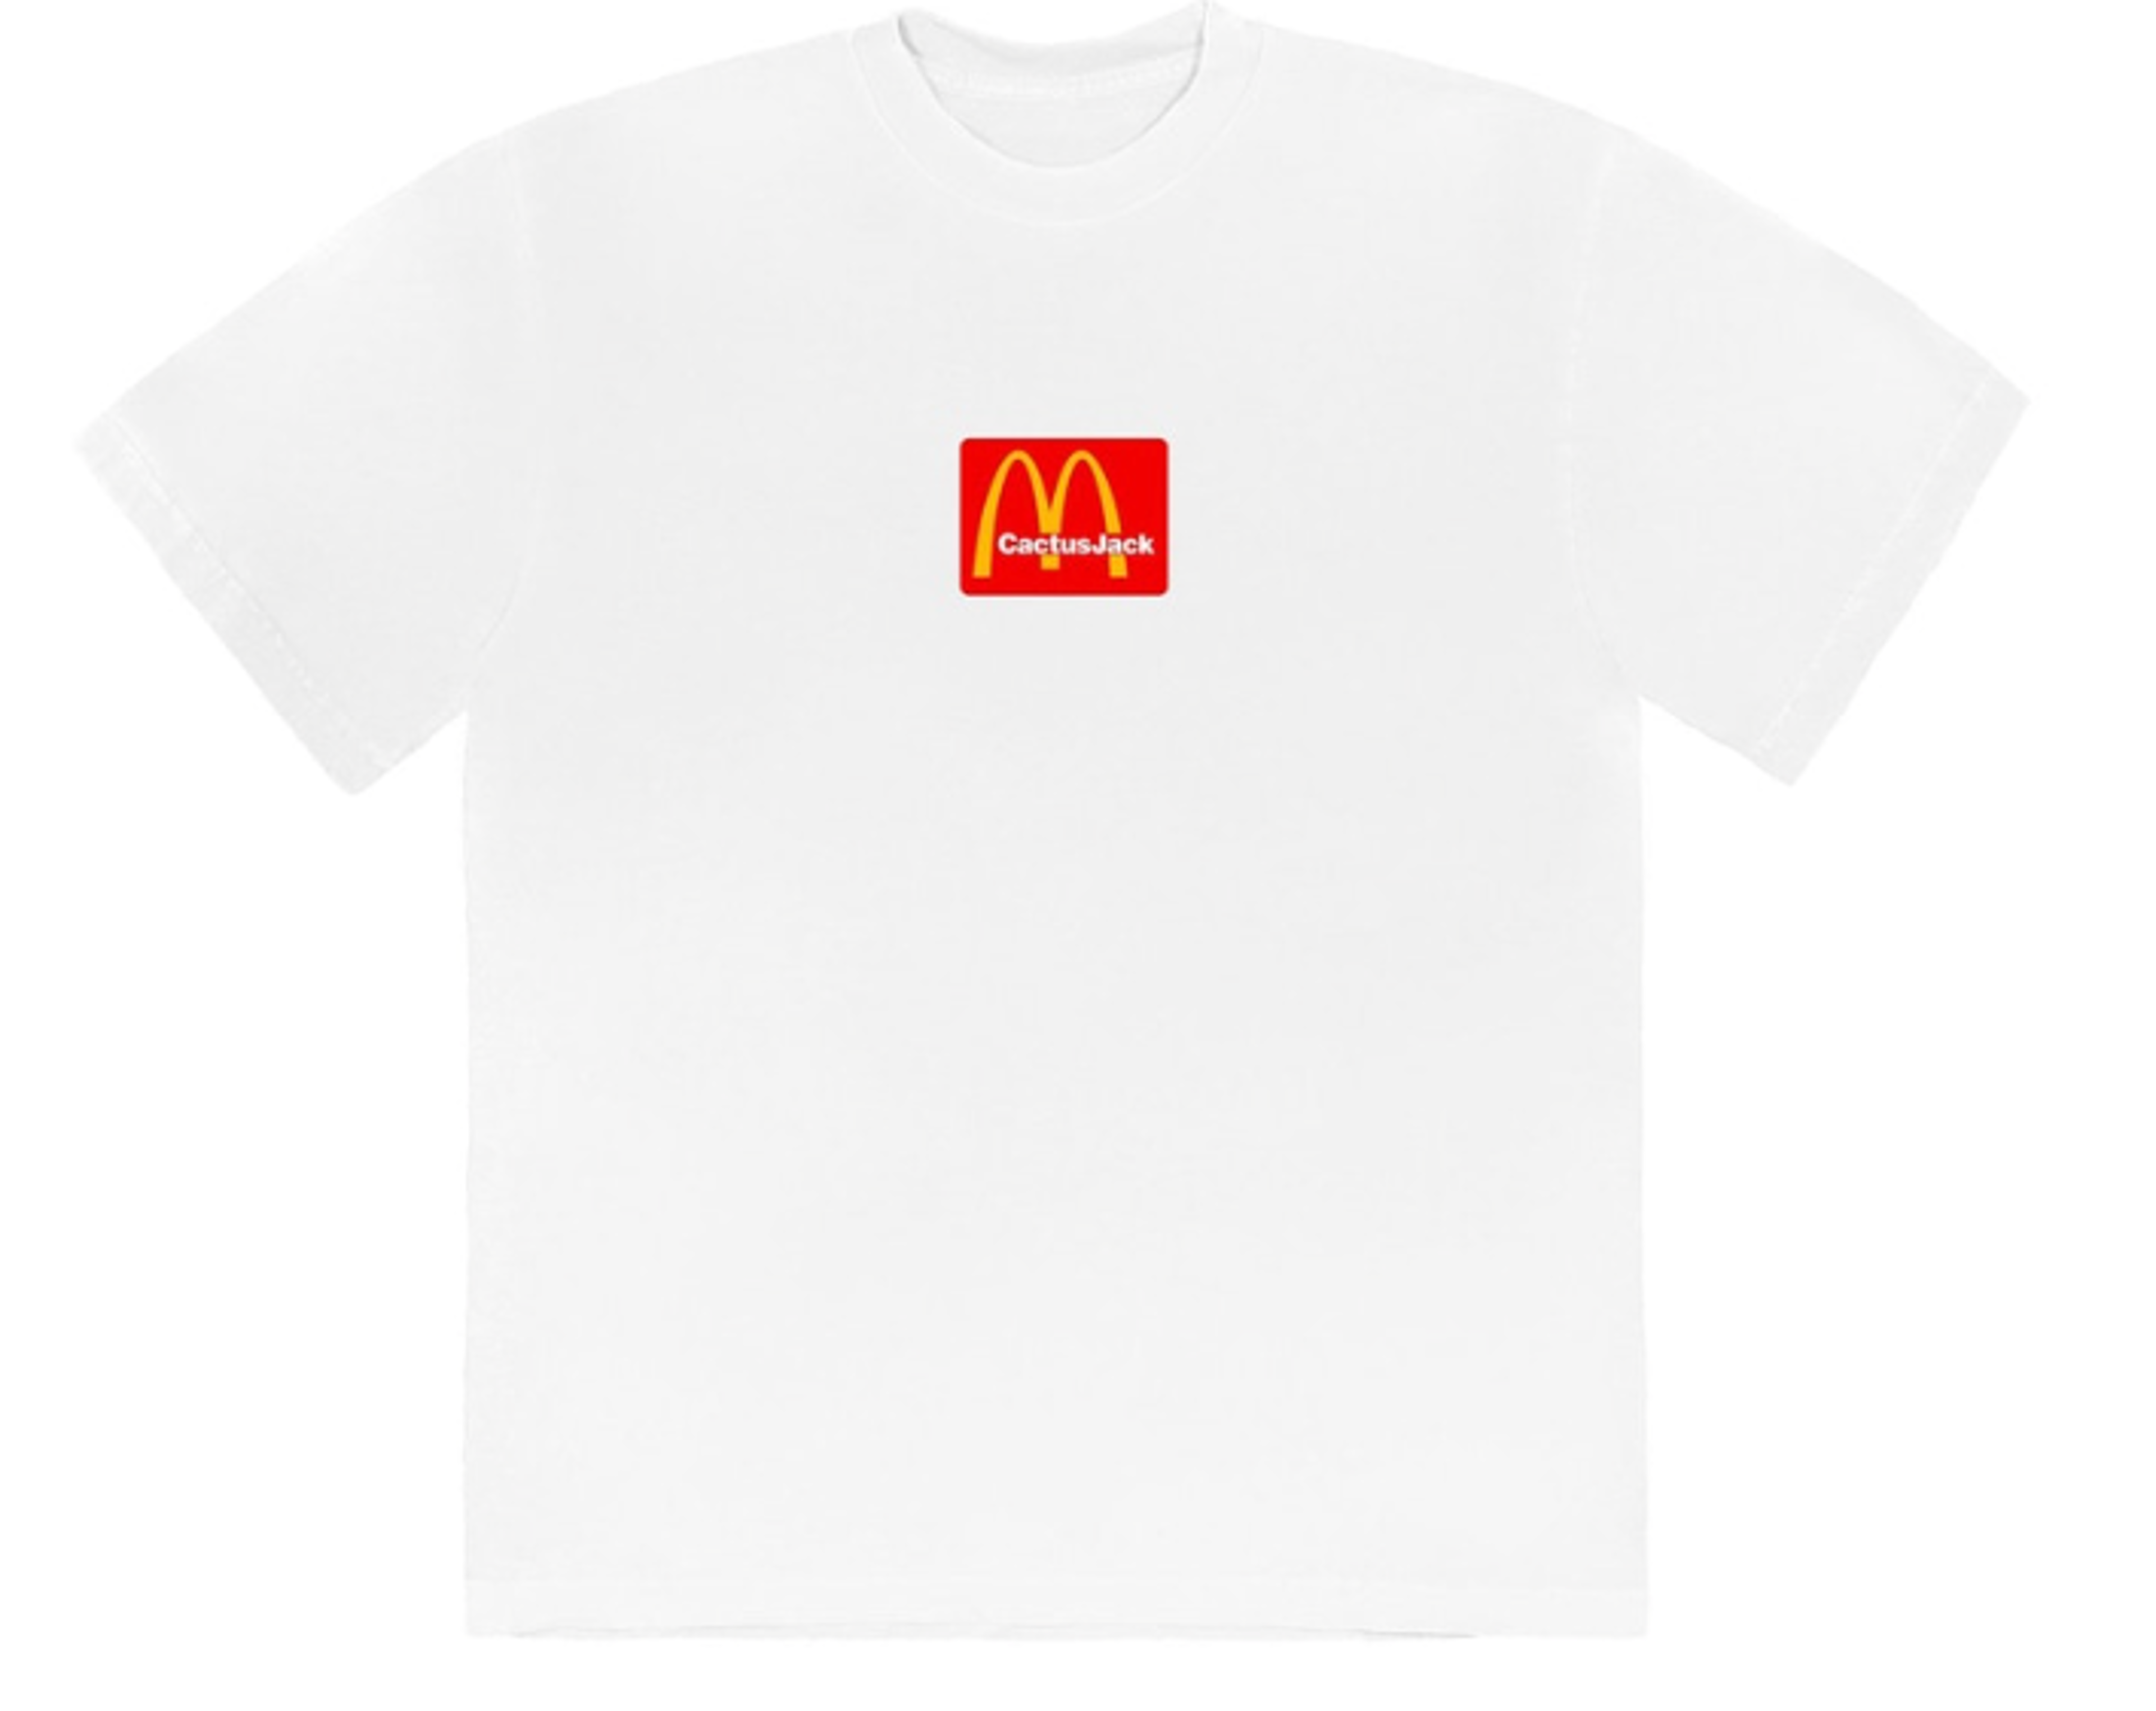 Travis Scott x McDonald's Sesame T-shirt - White/Red